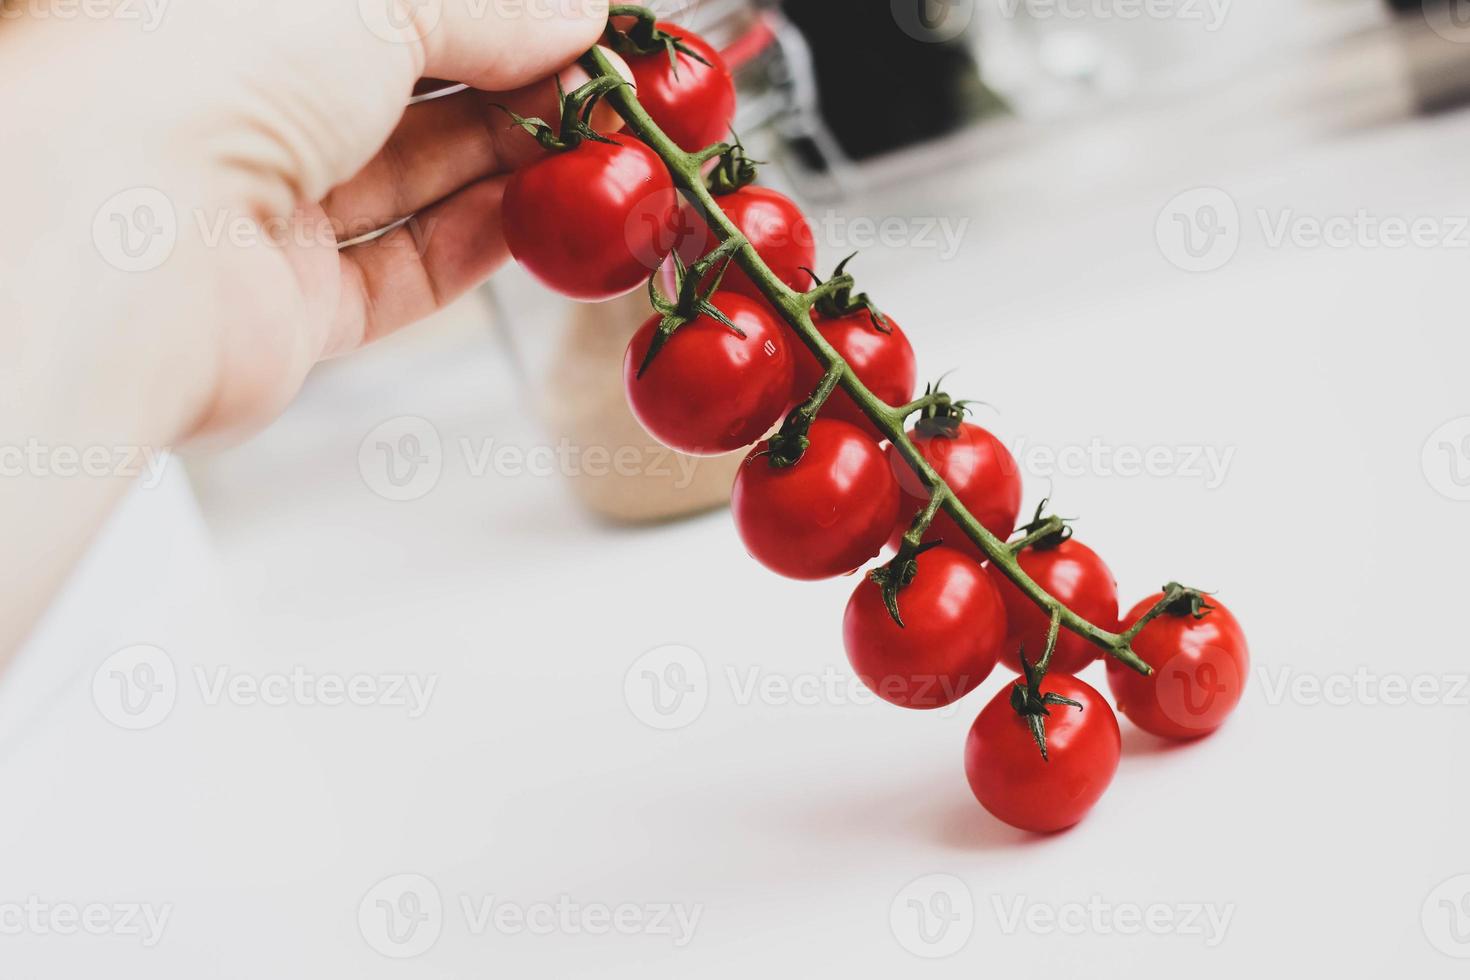 bando orgânico fresco de tomate cereja. foto